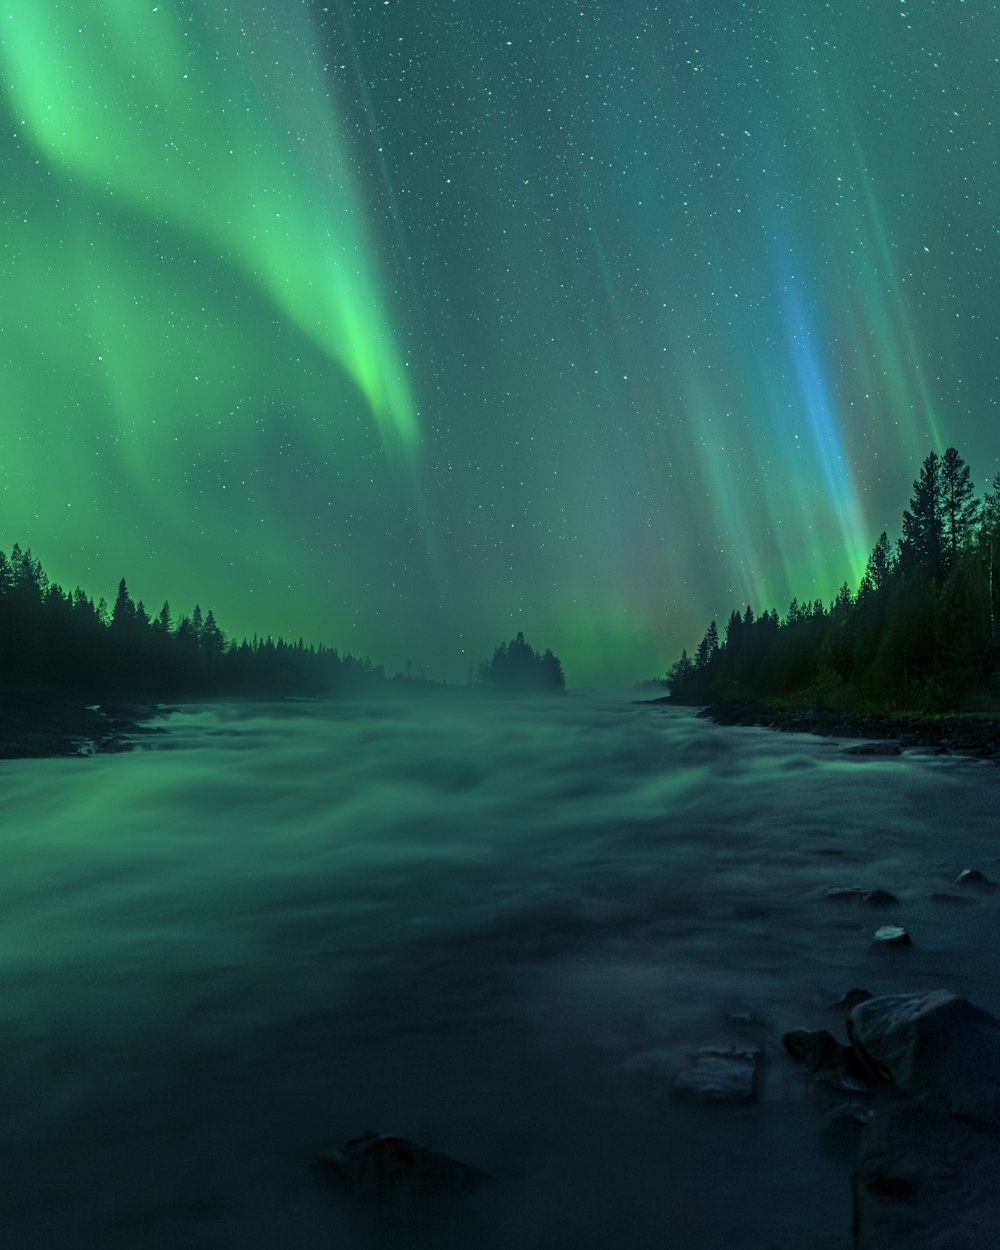 Une rivière sous un ciel vert et bleu rempli de lumières d’aurores boréales